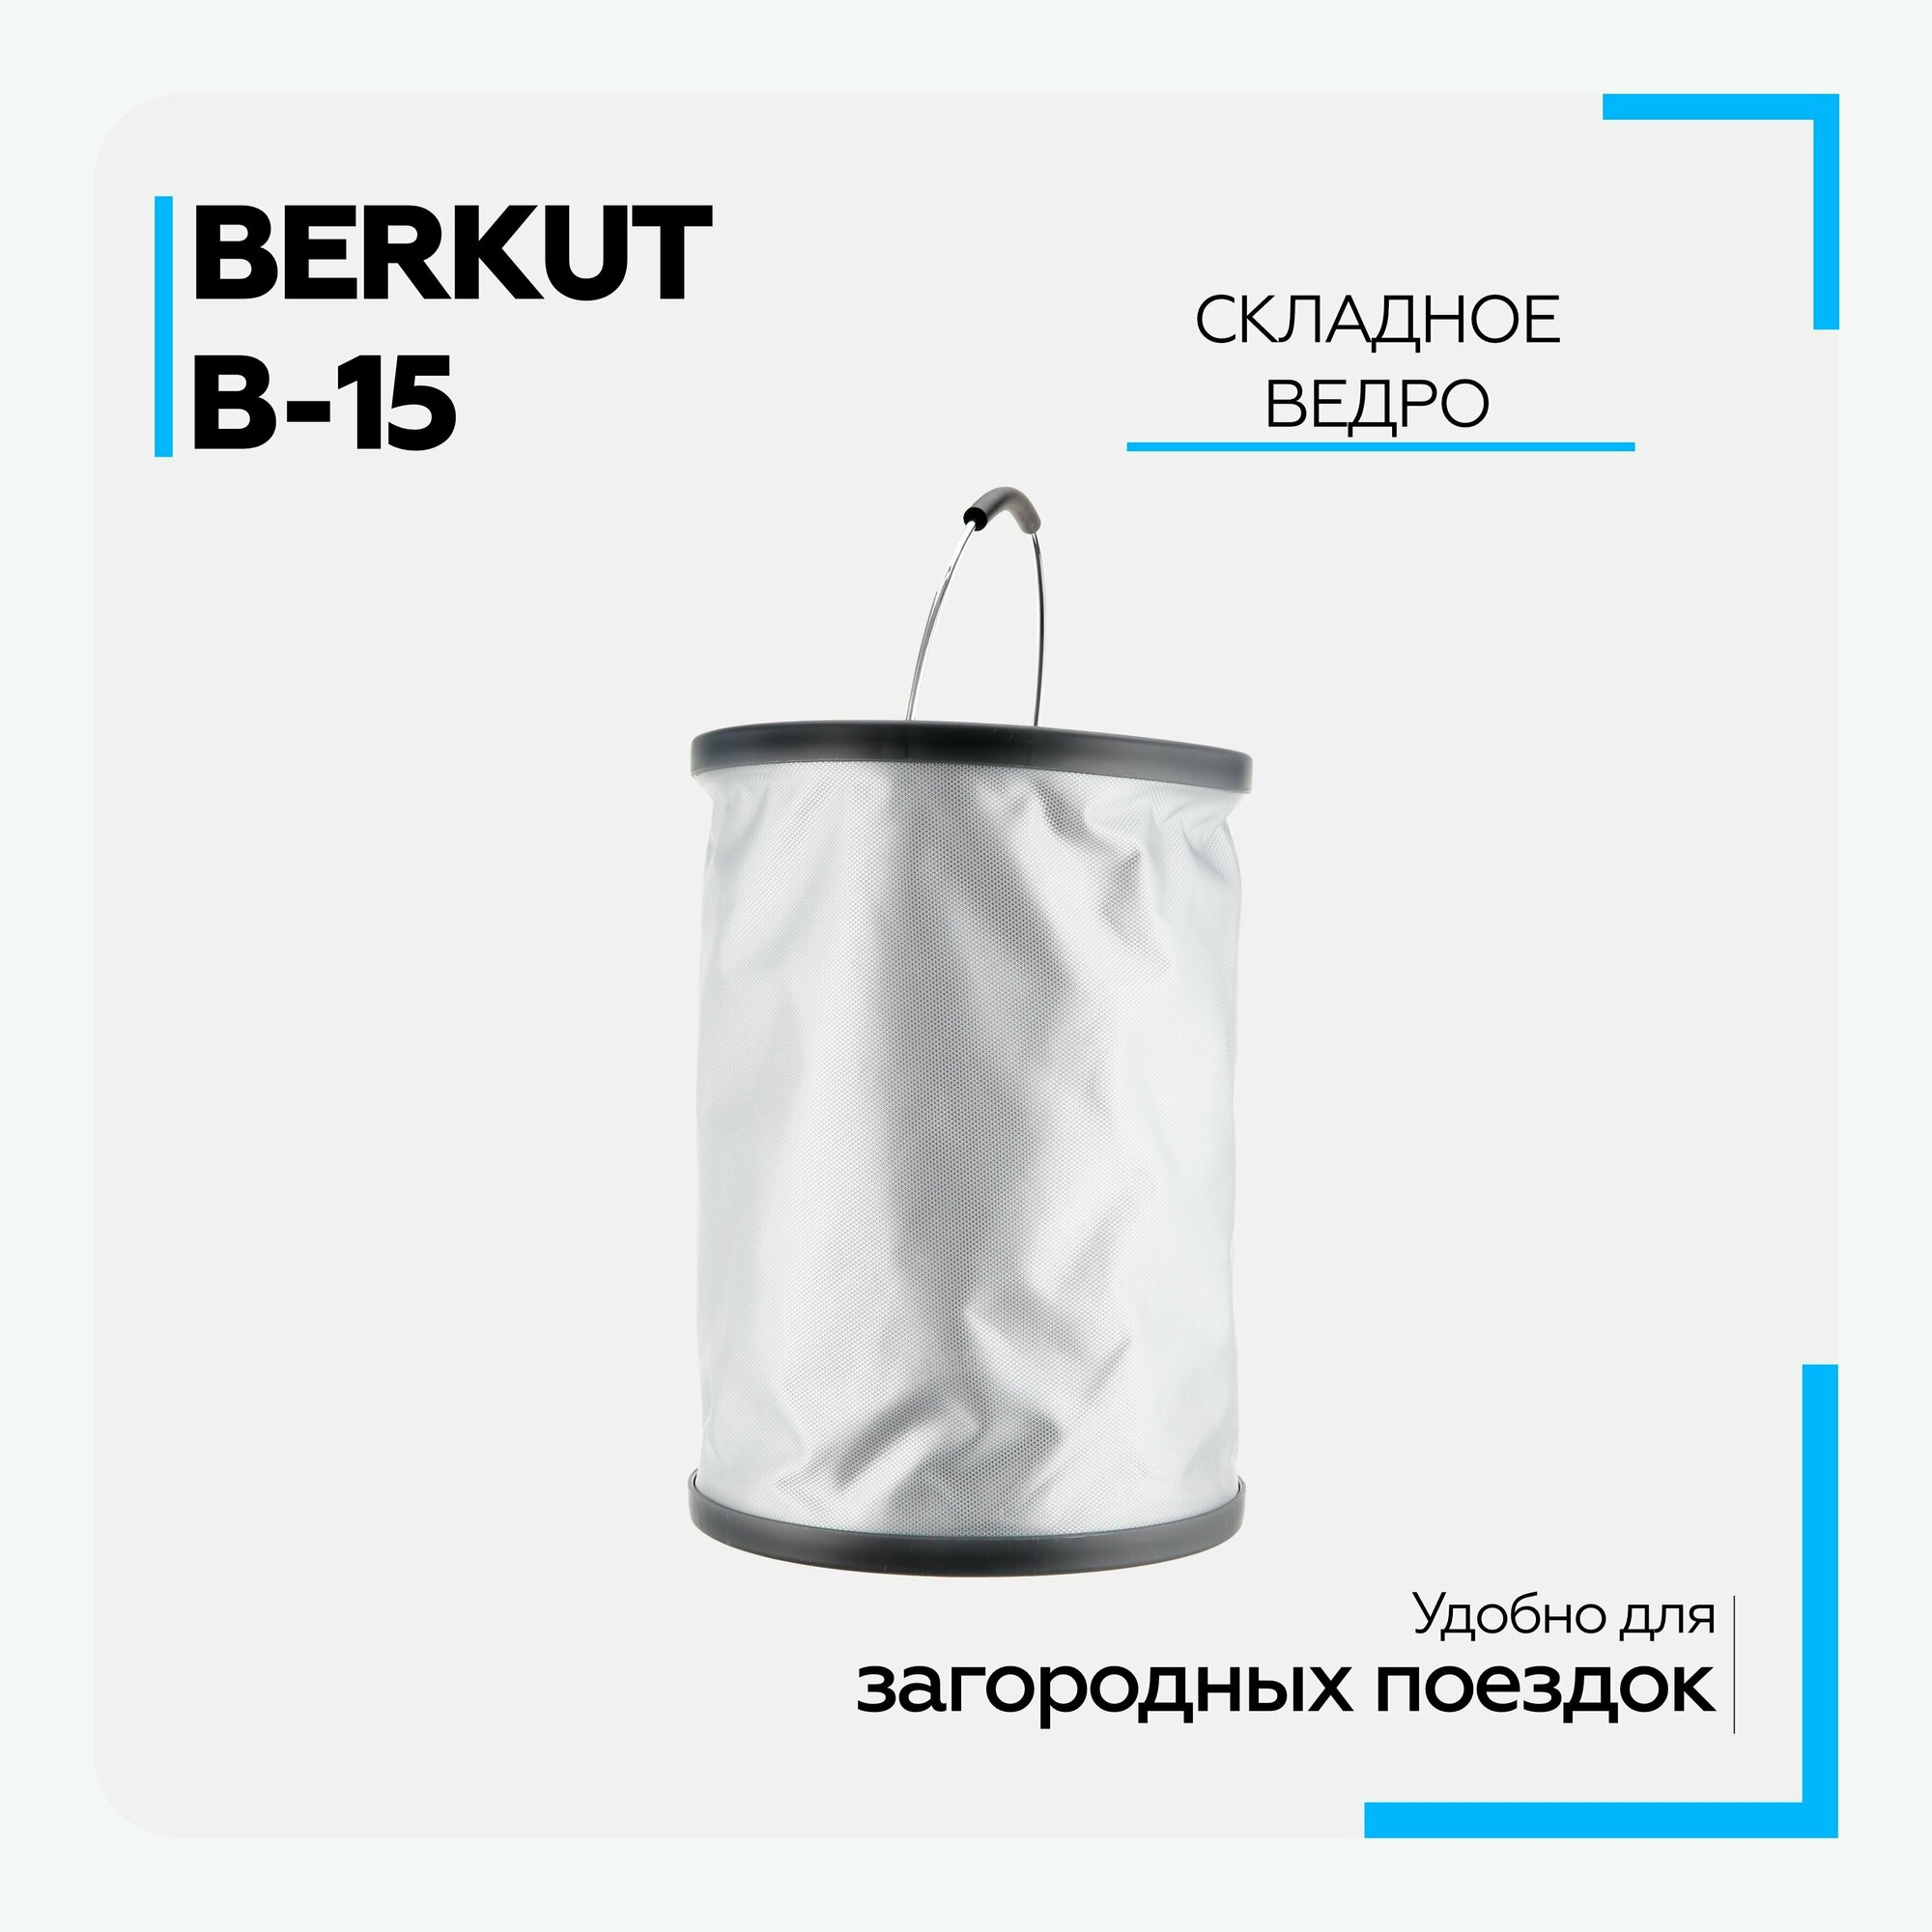 Складное ведро-трансформер Berkut B-15, 15 литров